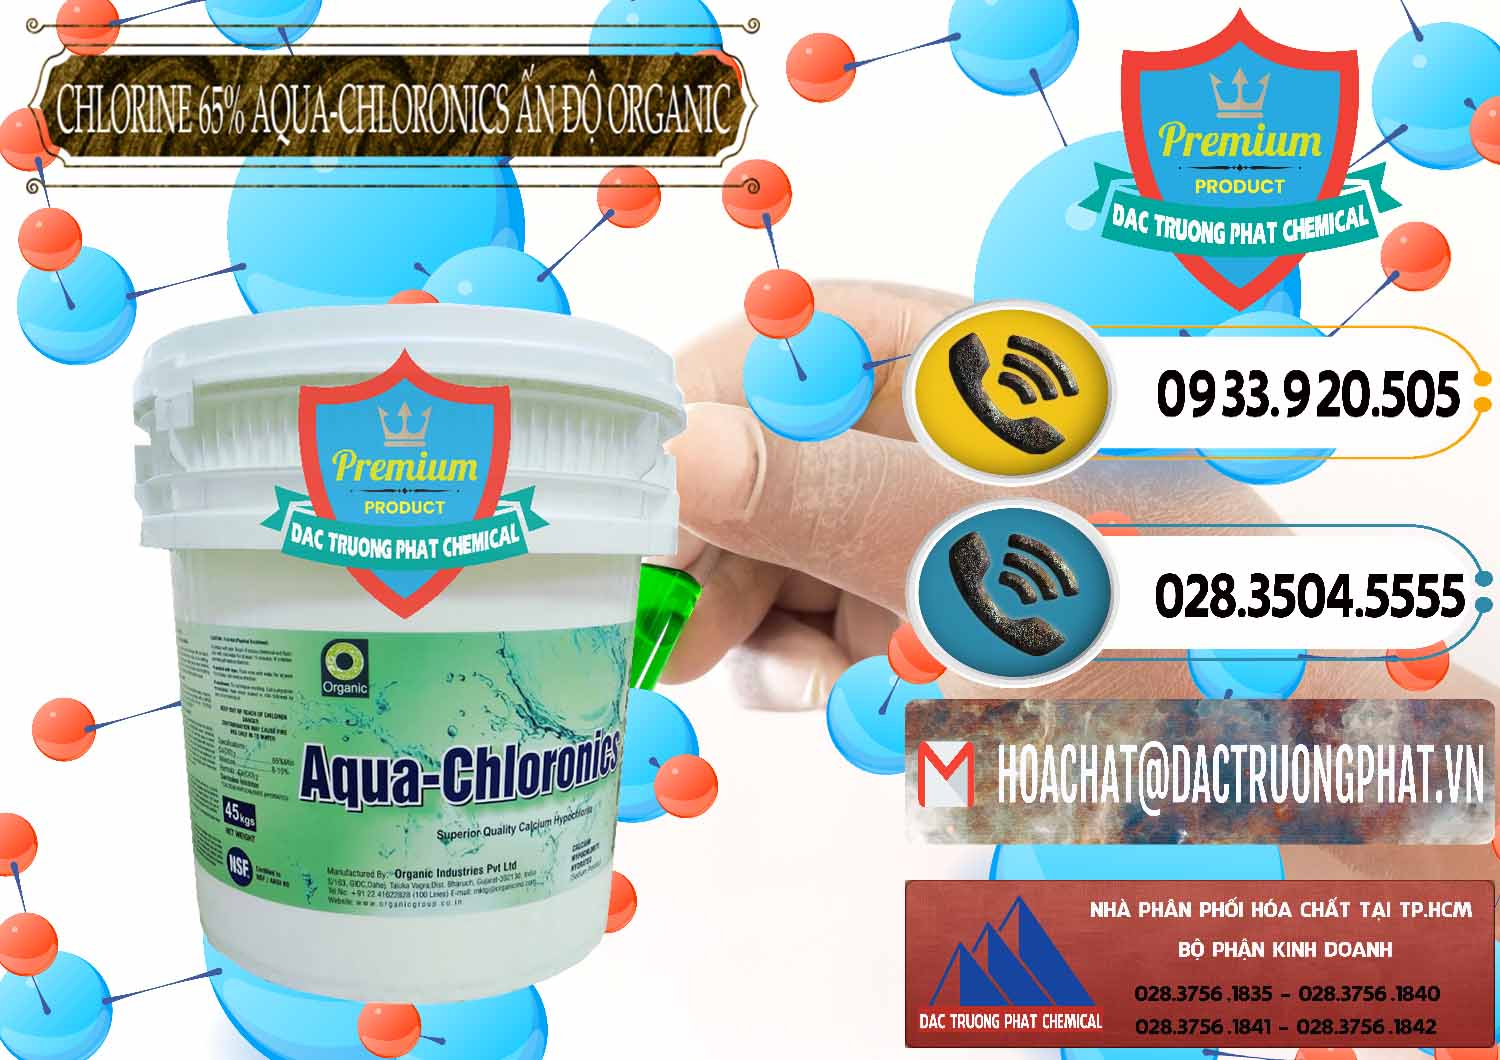 Nơi chuyên phân phối - bán Chlorine – Clorin 65% Aqua-Chloronics Ấn Độ Organic India - 0210 - Chuyên phân phối ( kinh doanh ) hóa chất tại TP.HCM - hoachatdetnhuom.vn